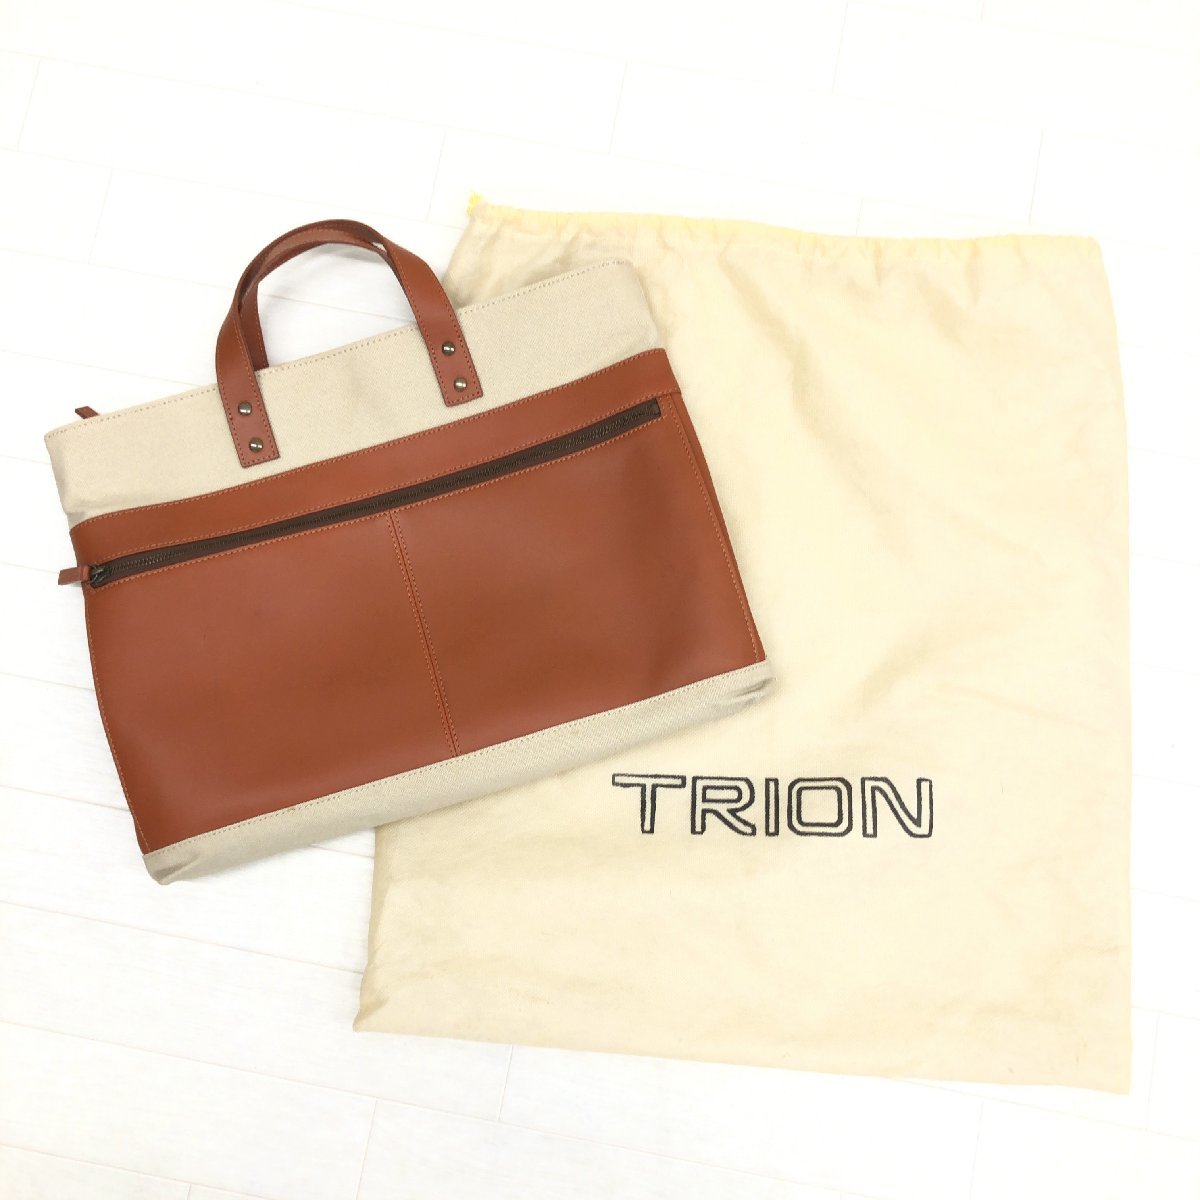 ◆TRION トライオン キャンバス 本革 レザー トートバッグ ベージュ×ブラウン ハンドバッグ ブリーフケース 書類鞄 メンズ 紳士_画像9